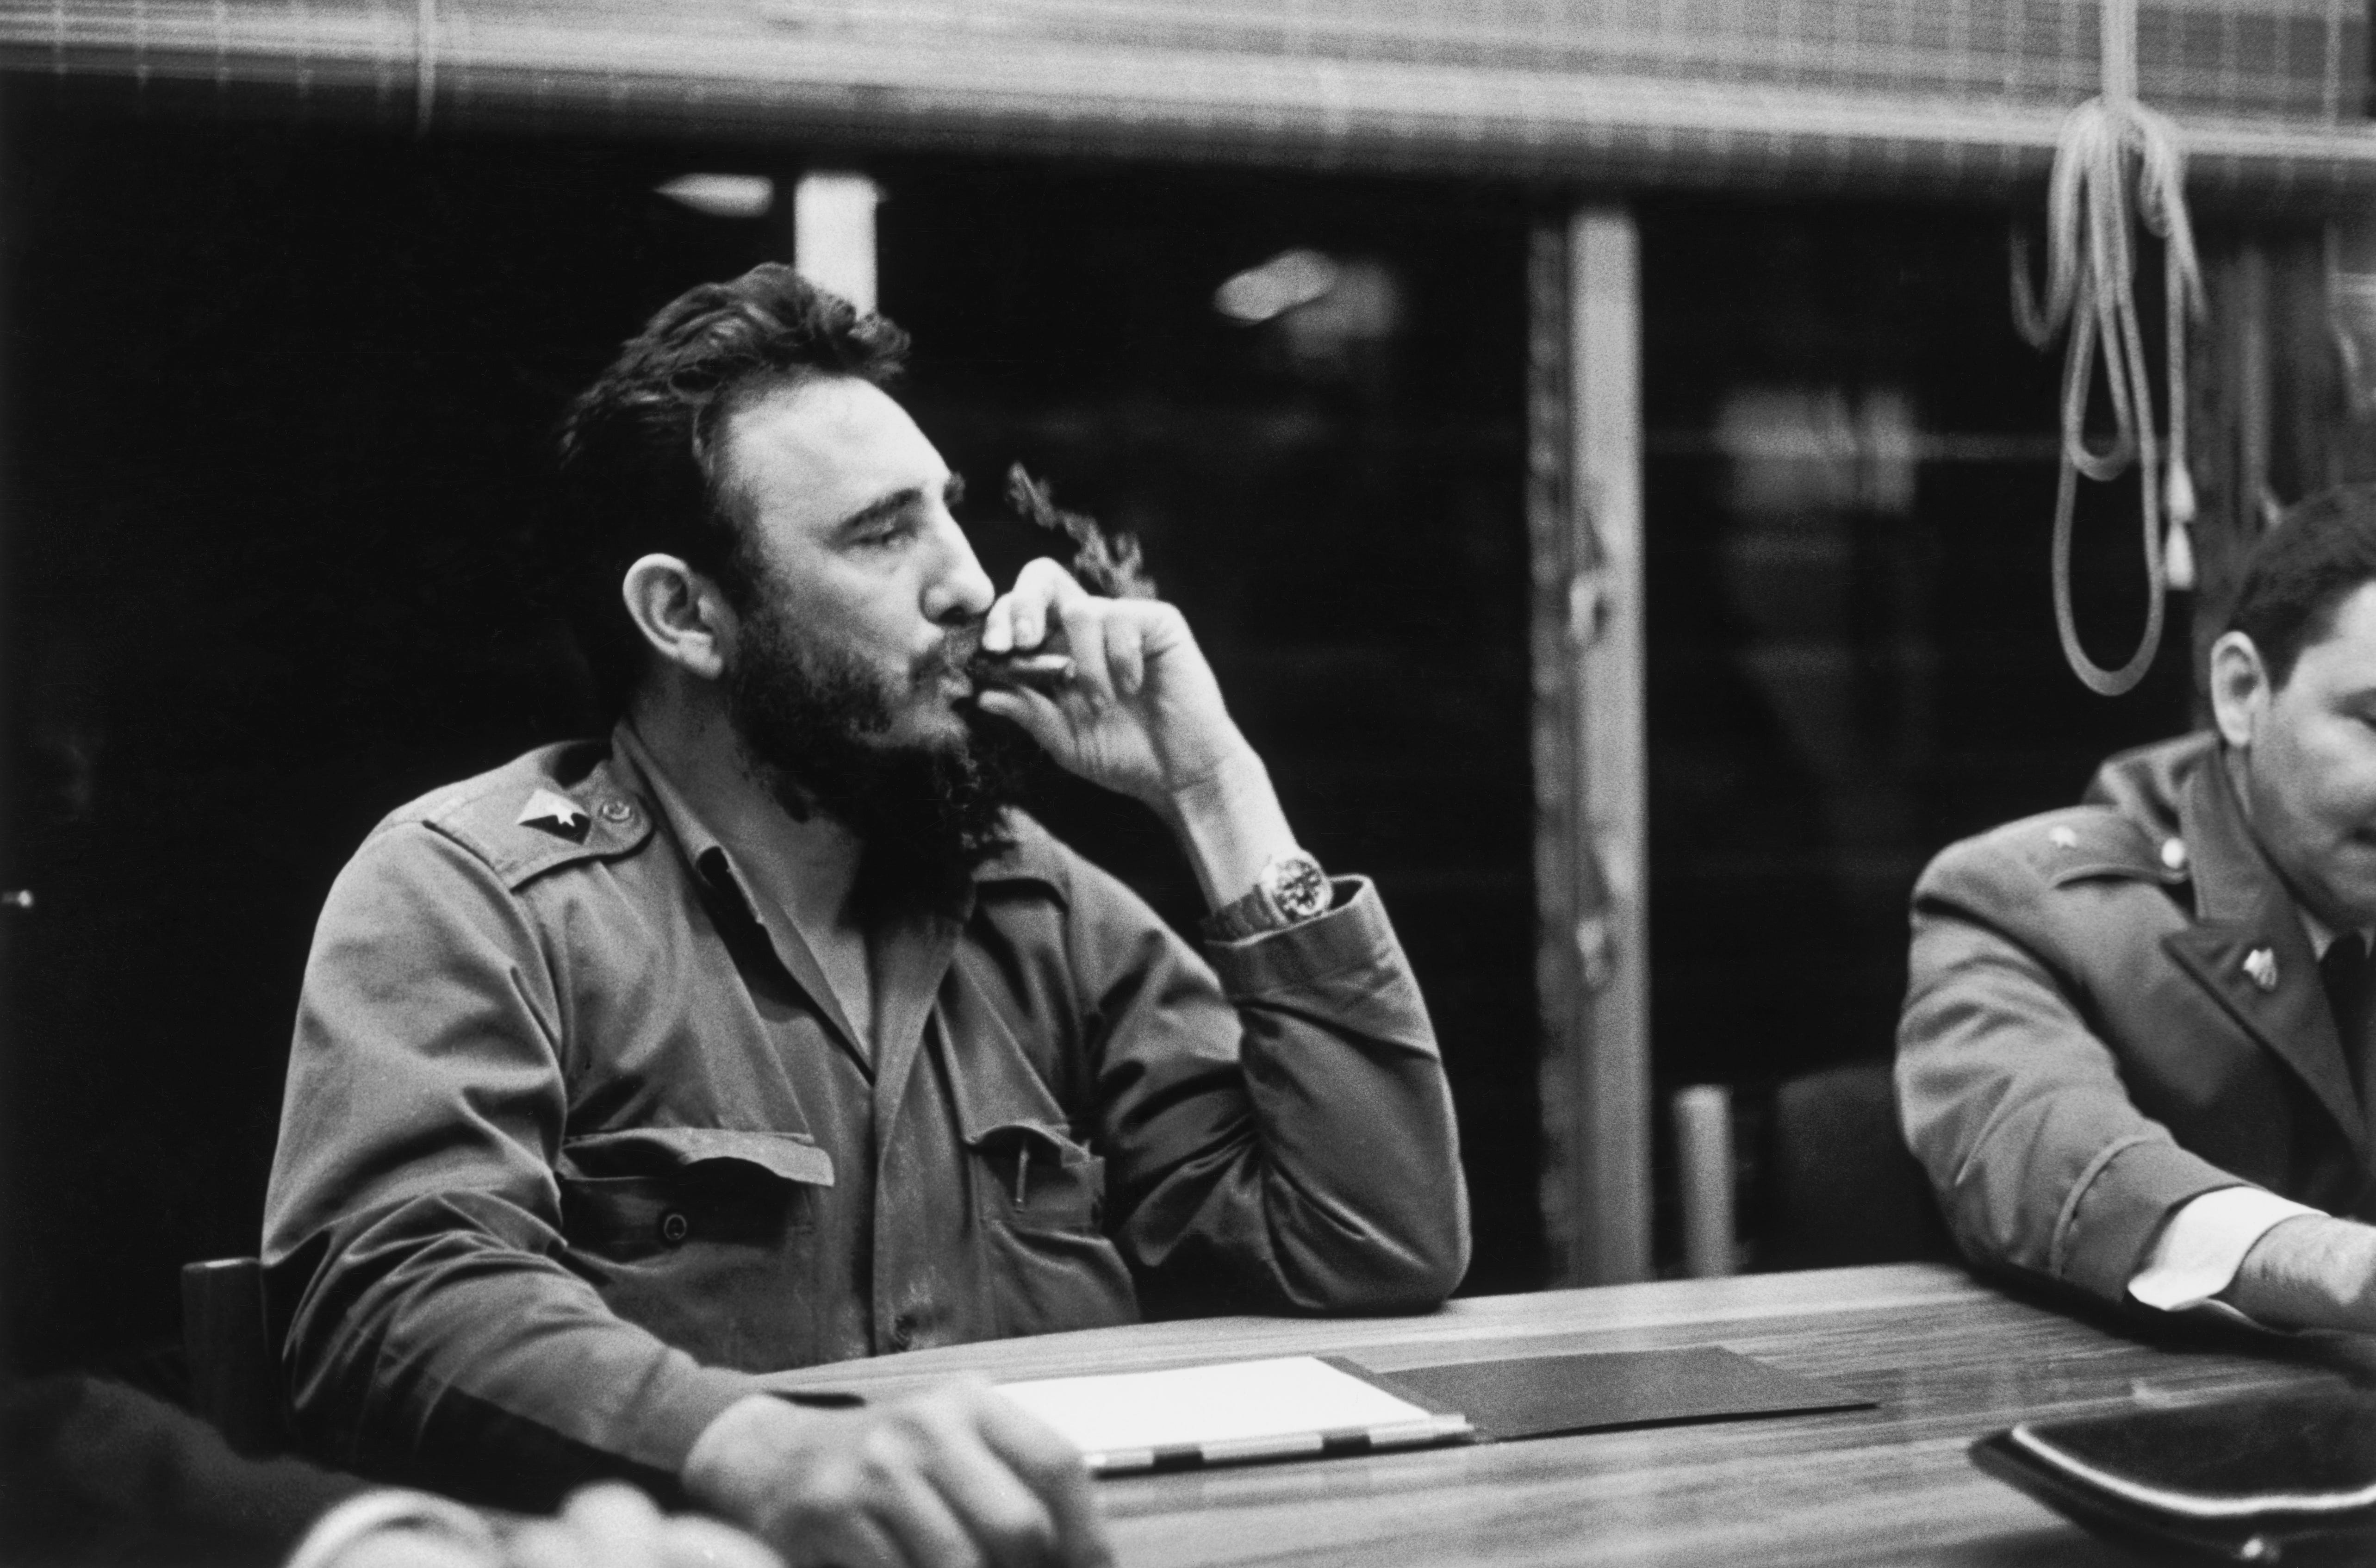 Ein Foto von Fidel Castro, der in einer Besprechung sitzt und einen Zug von seiner Zigarre nimmt.